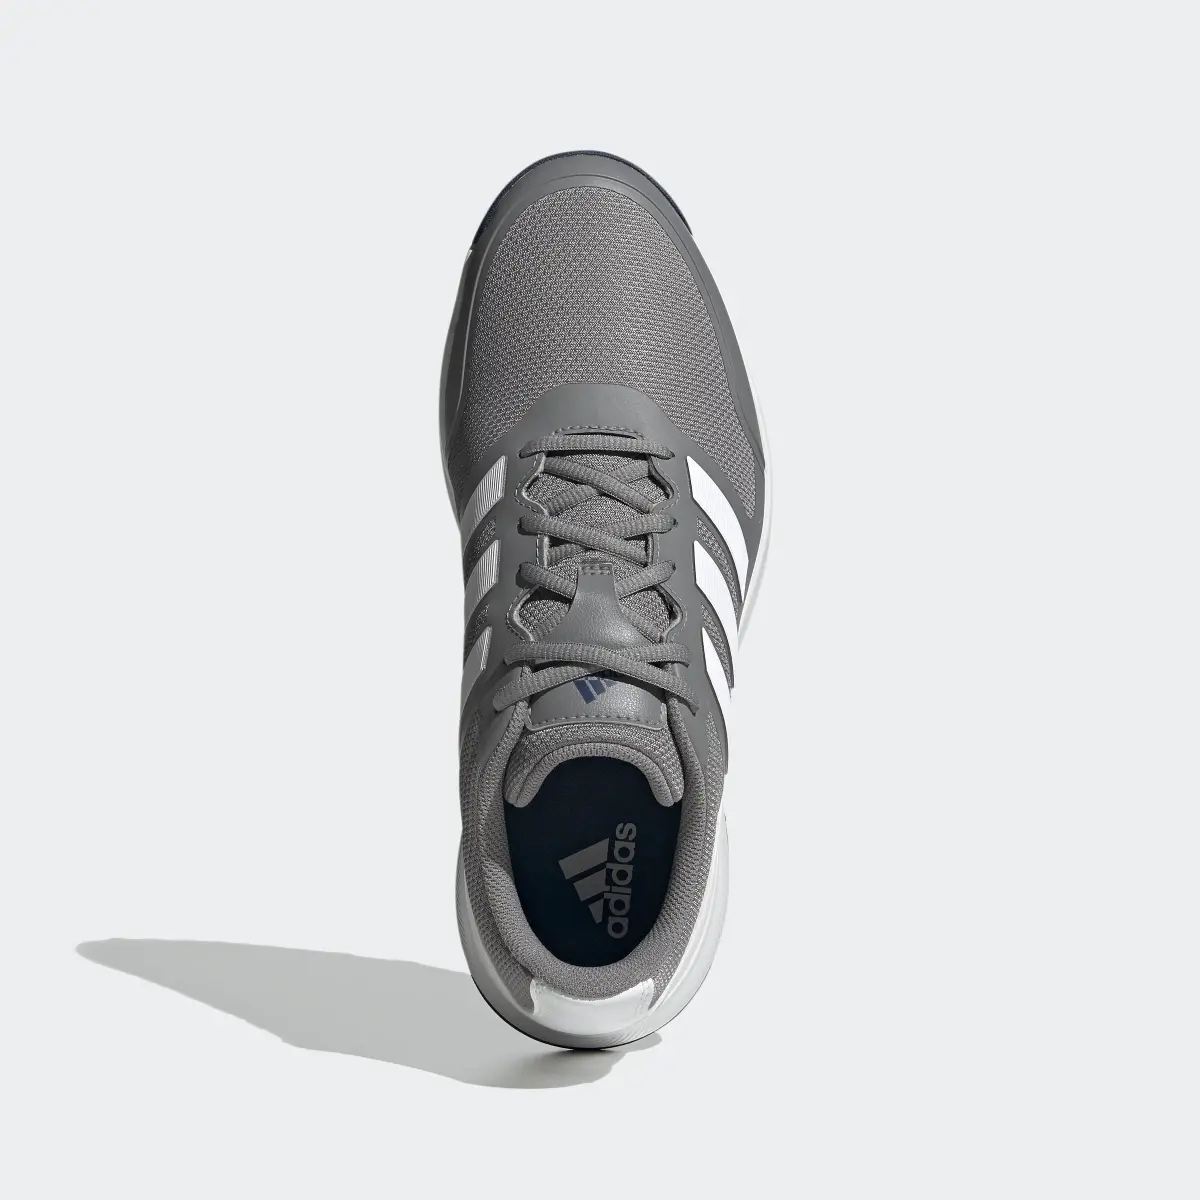 Adidas Tech Response SL Spikeless Golf Shoes. 3